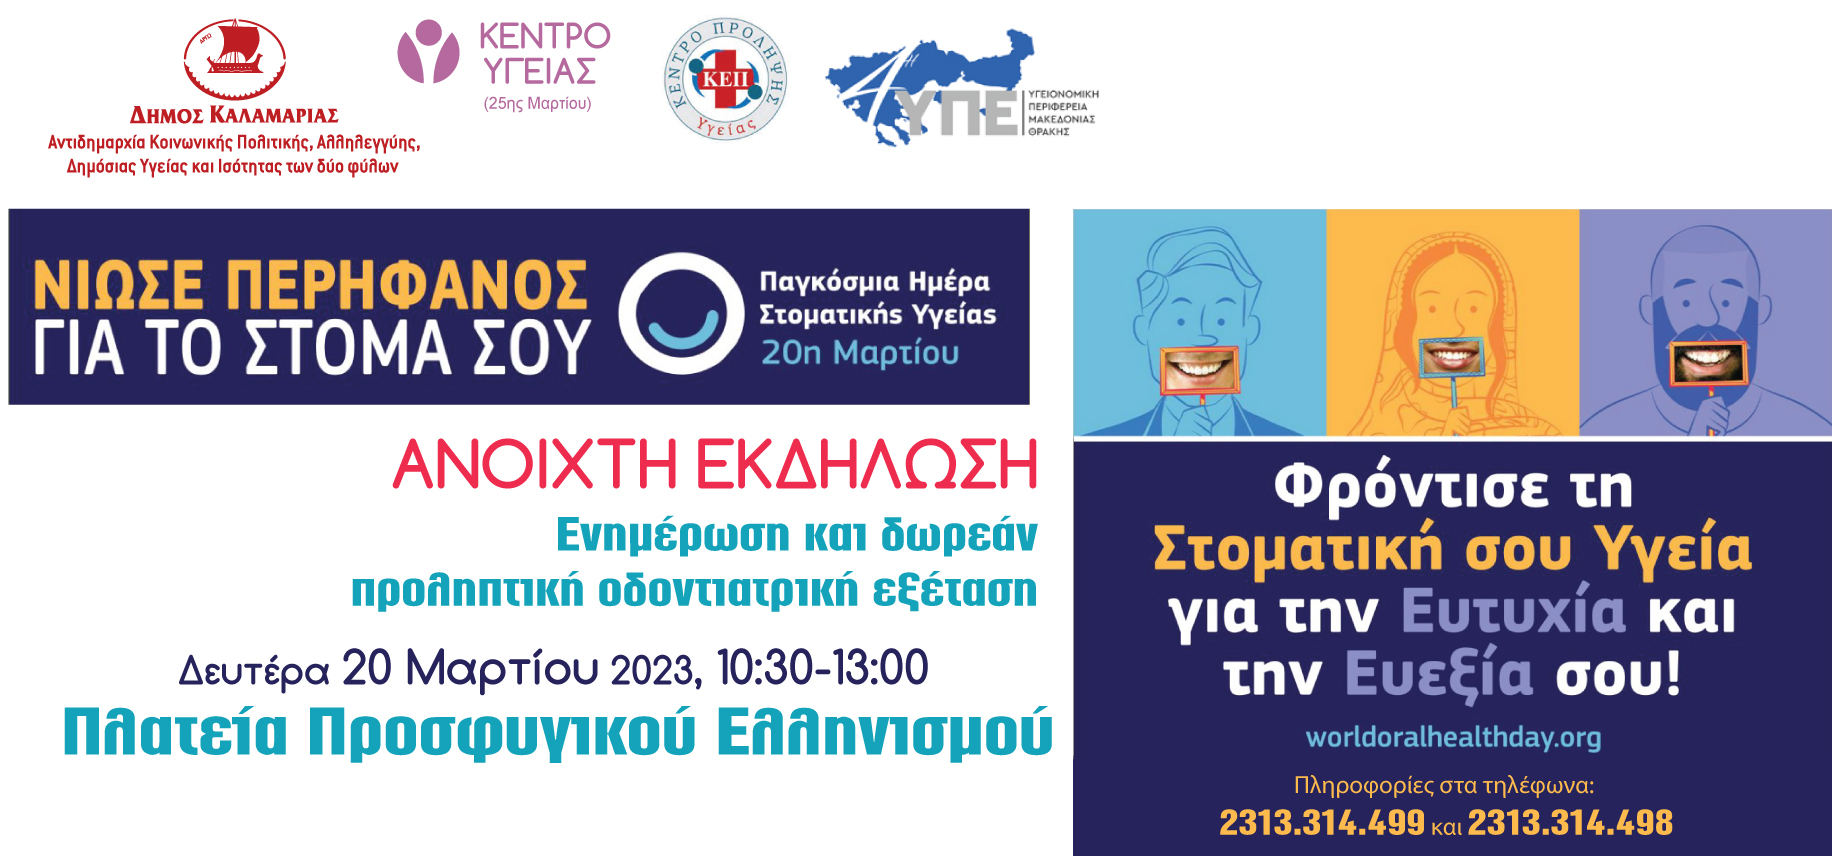 Δήμος Καλαμαριάς: Δωρεάν έλεγχος στοματικής υγιεινής για έναν μήνα